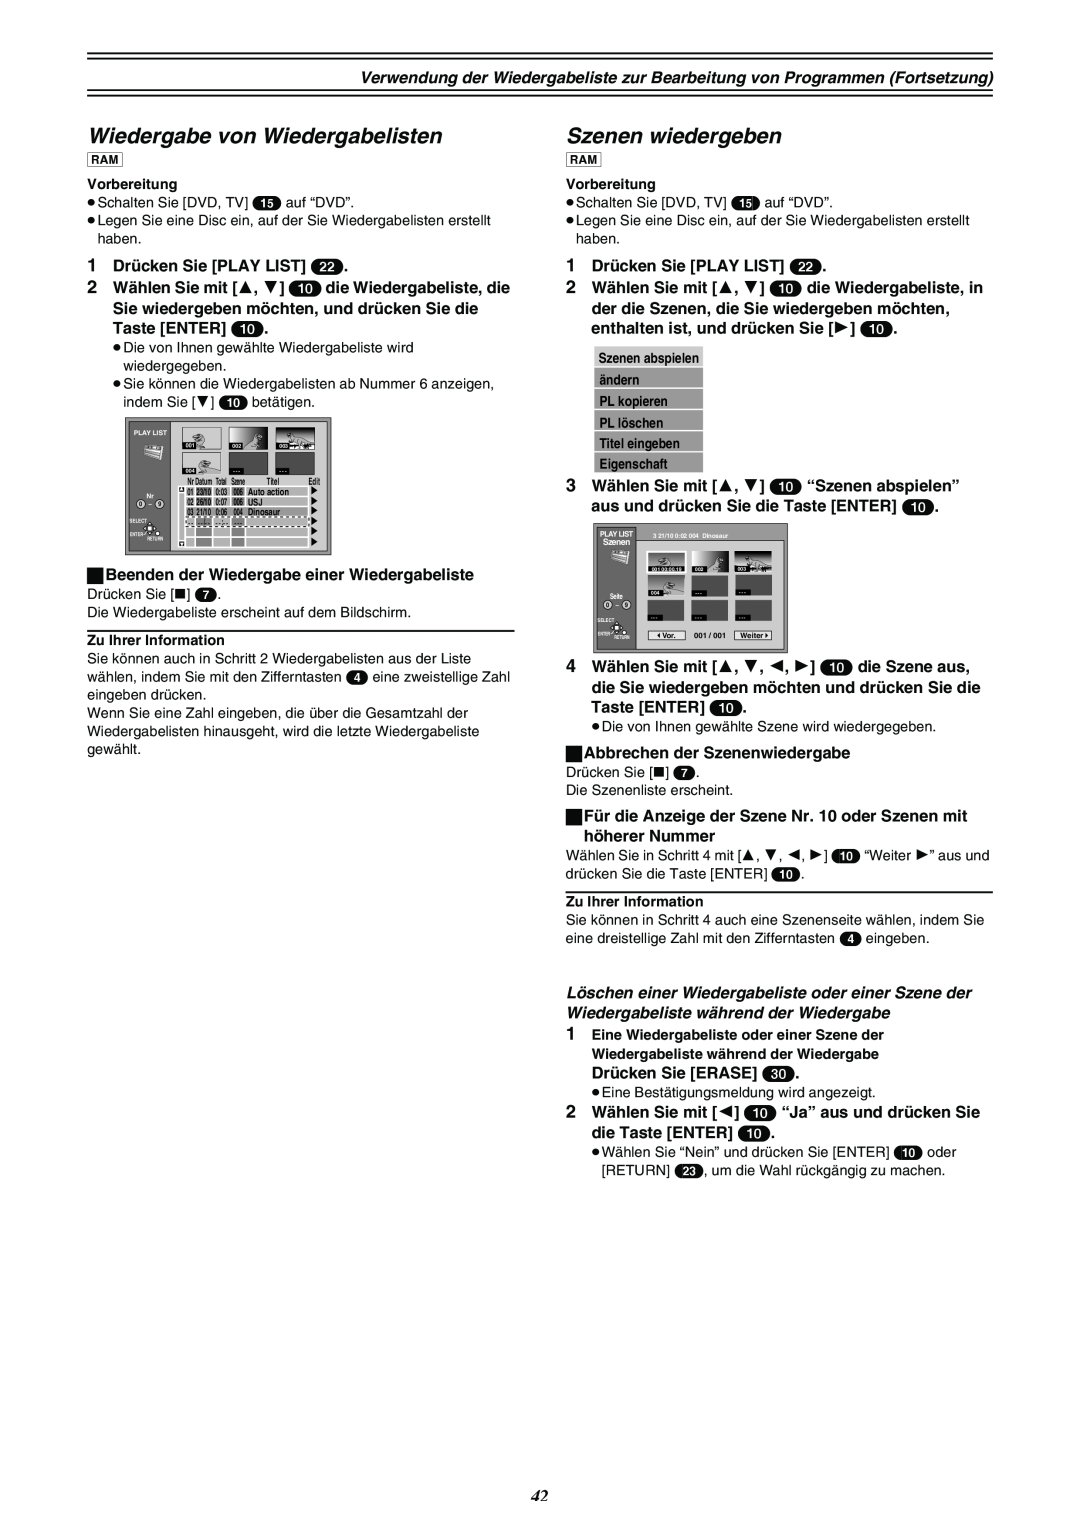 Panasonic DMR-E30 manual Wiedergabe von Wiedergabelisten, Szenen wiedergeben, Eigenschaft 